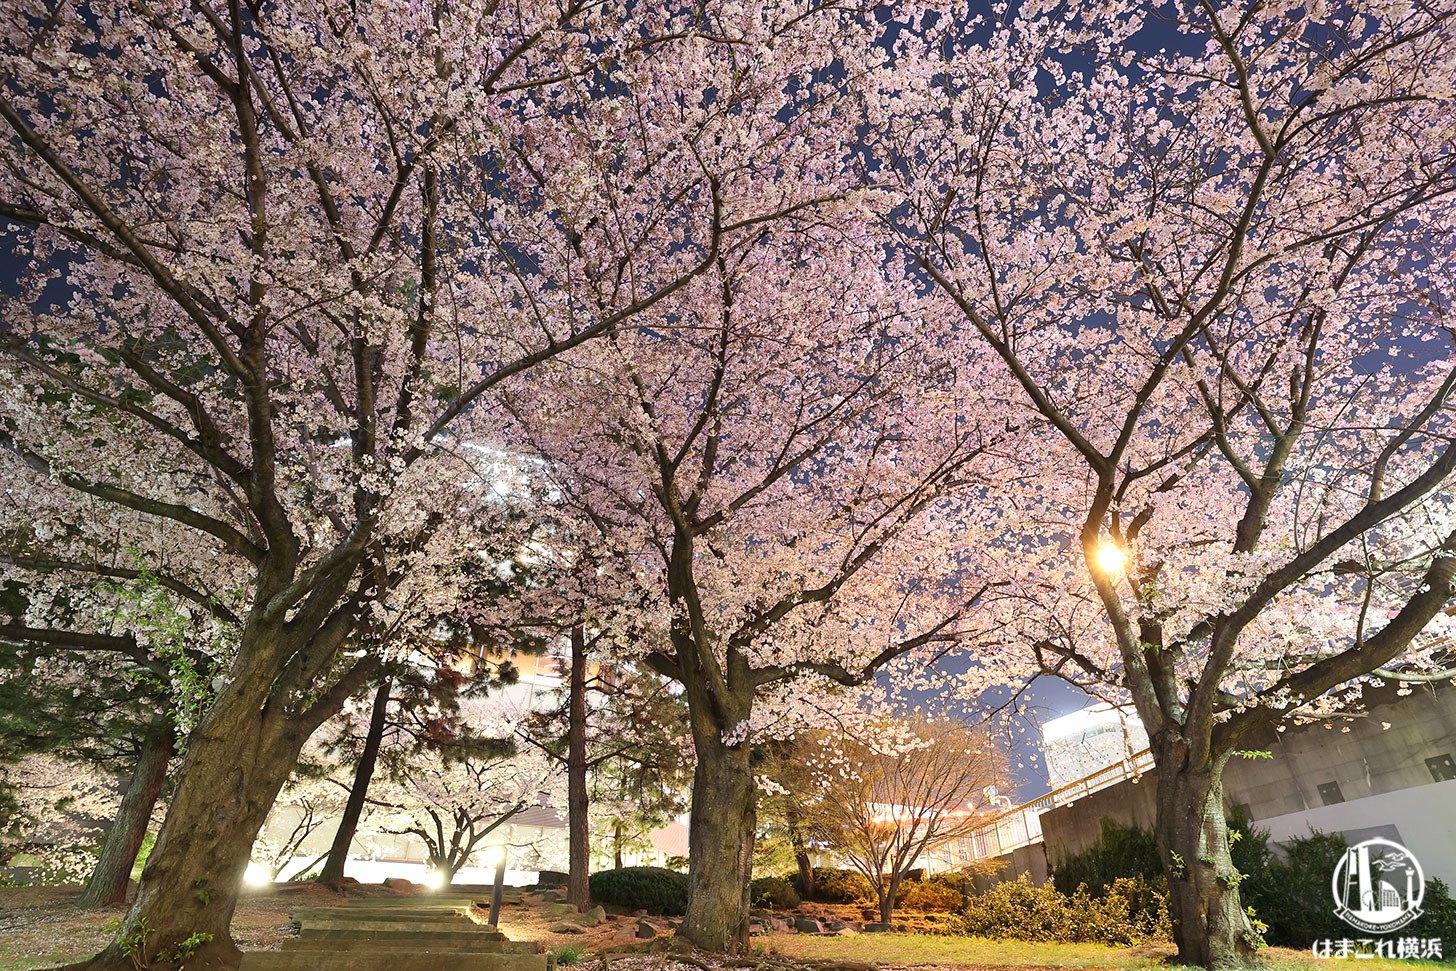 カップヌードルミュージアムパークの夜桜